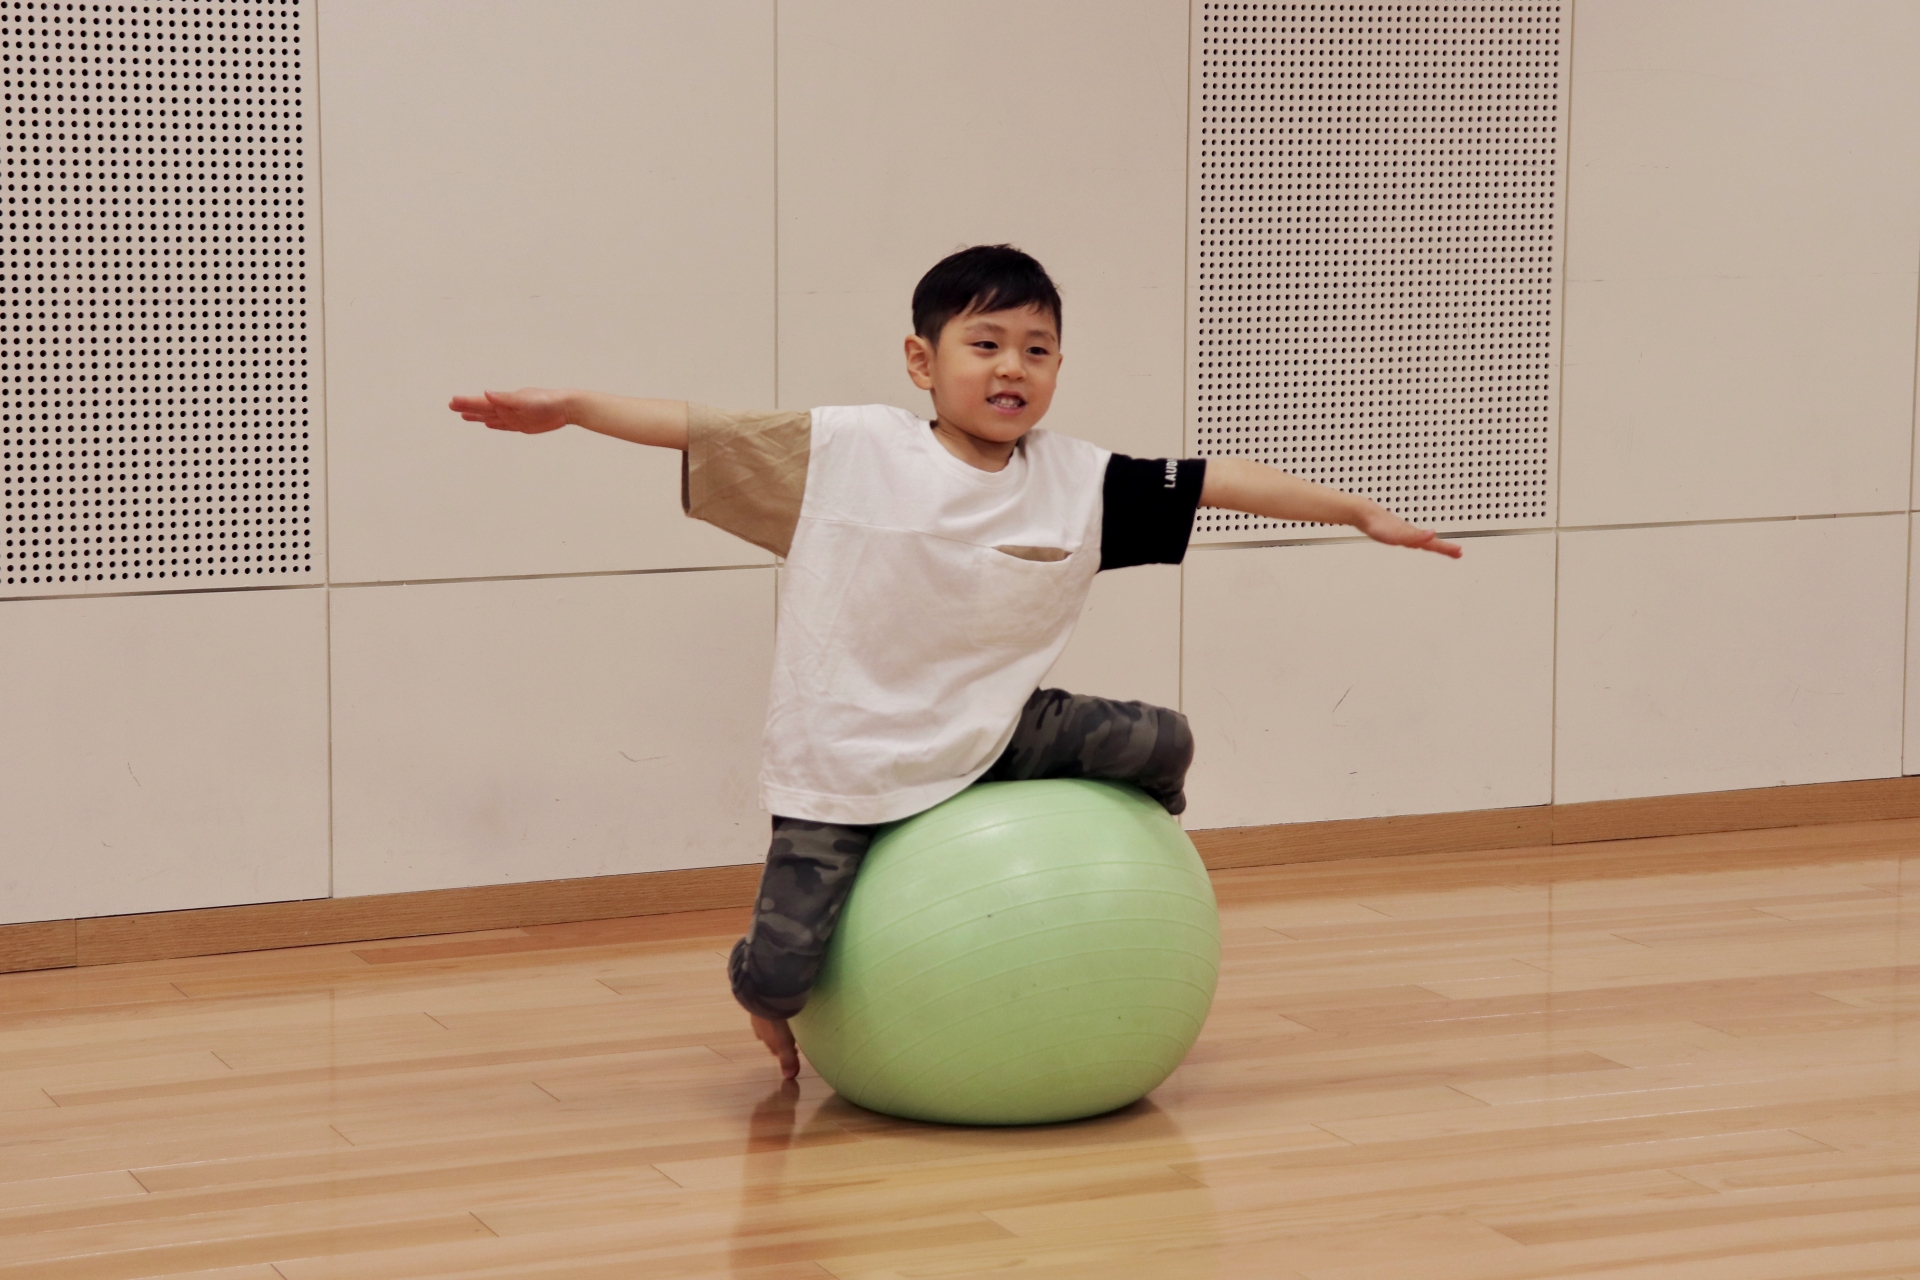 バランスボールを活用した子どもの運動改善プログラムの効果